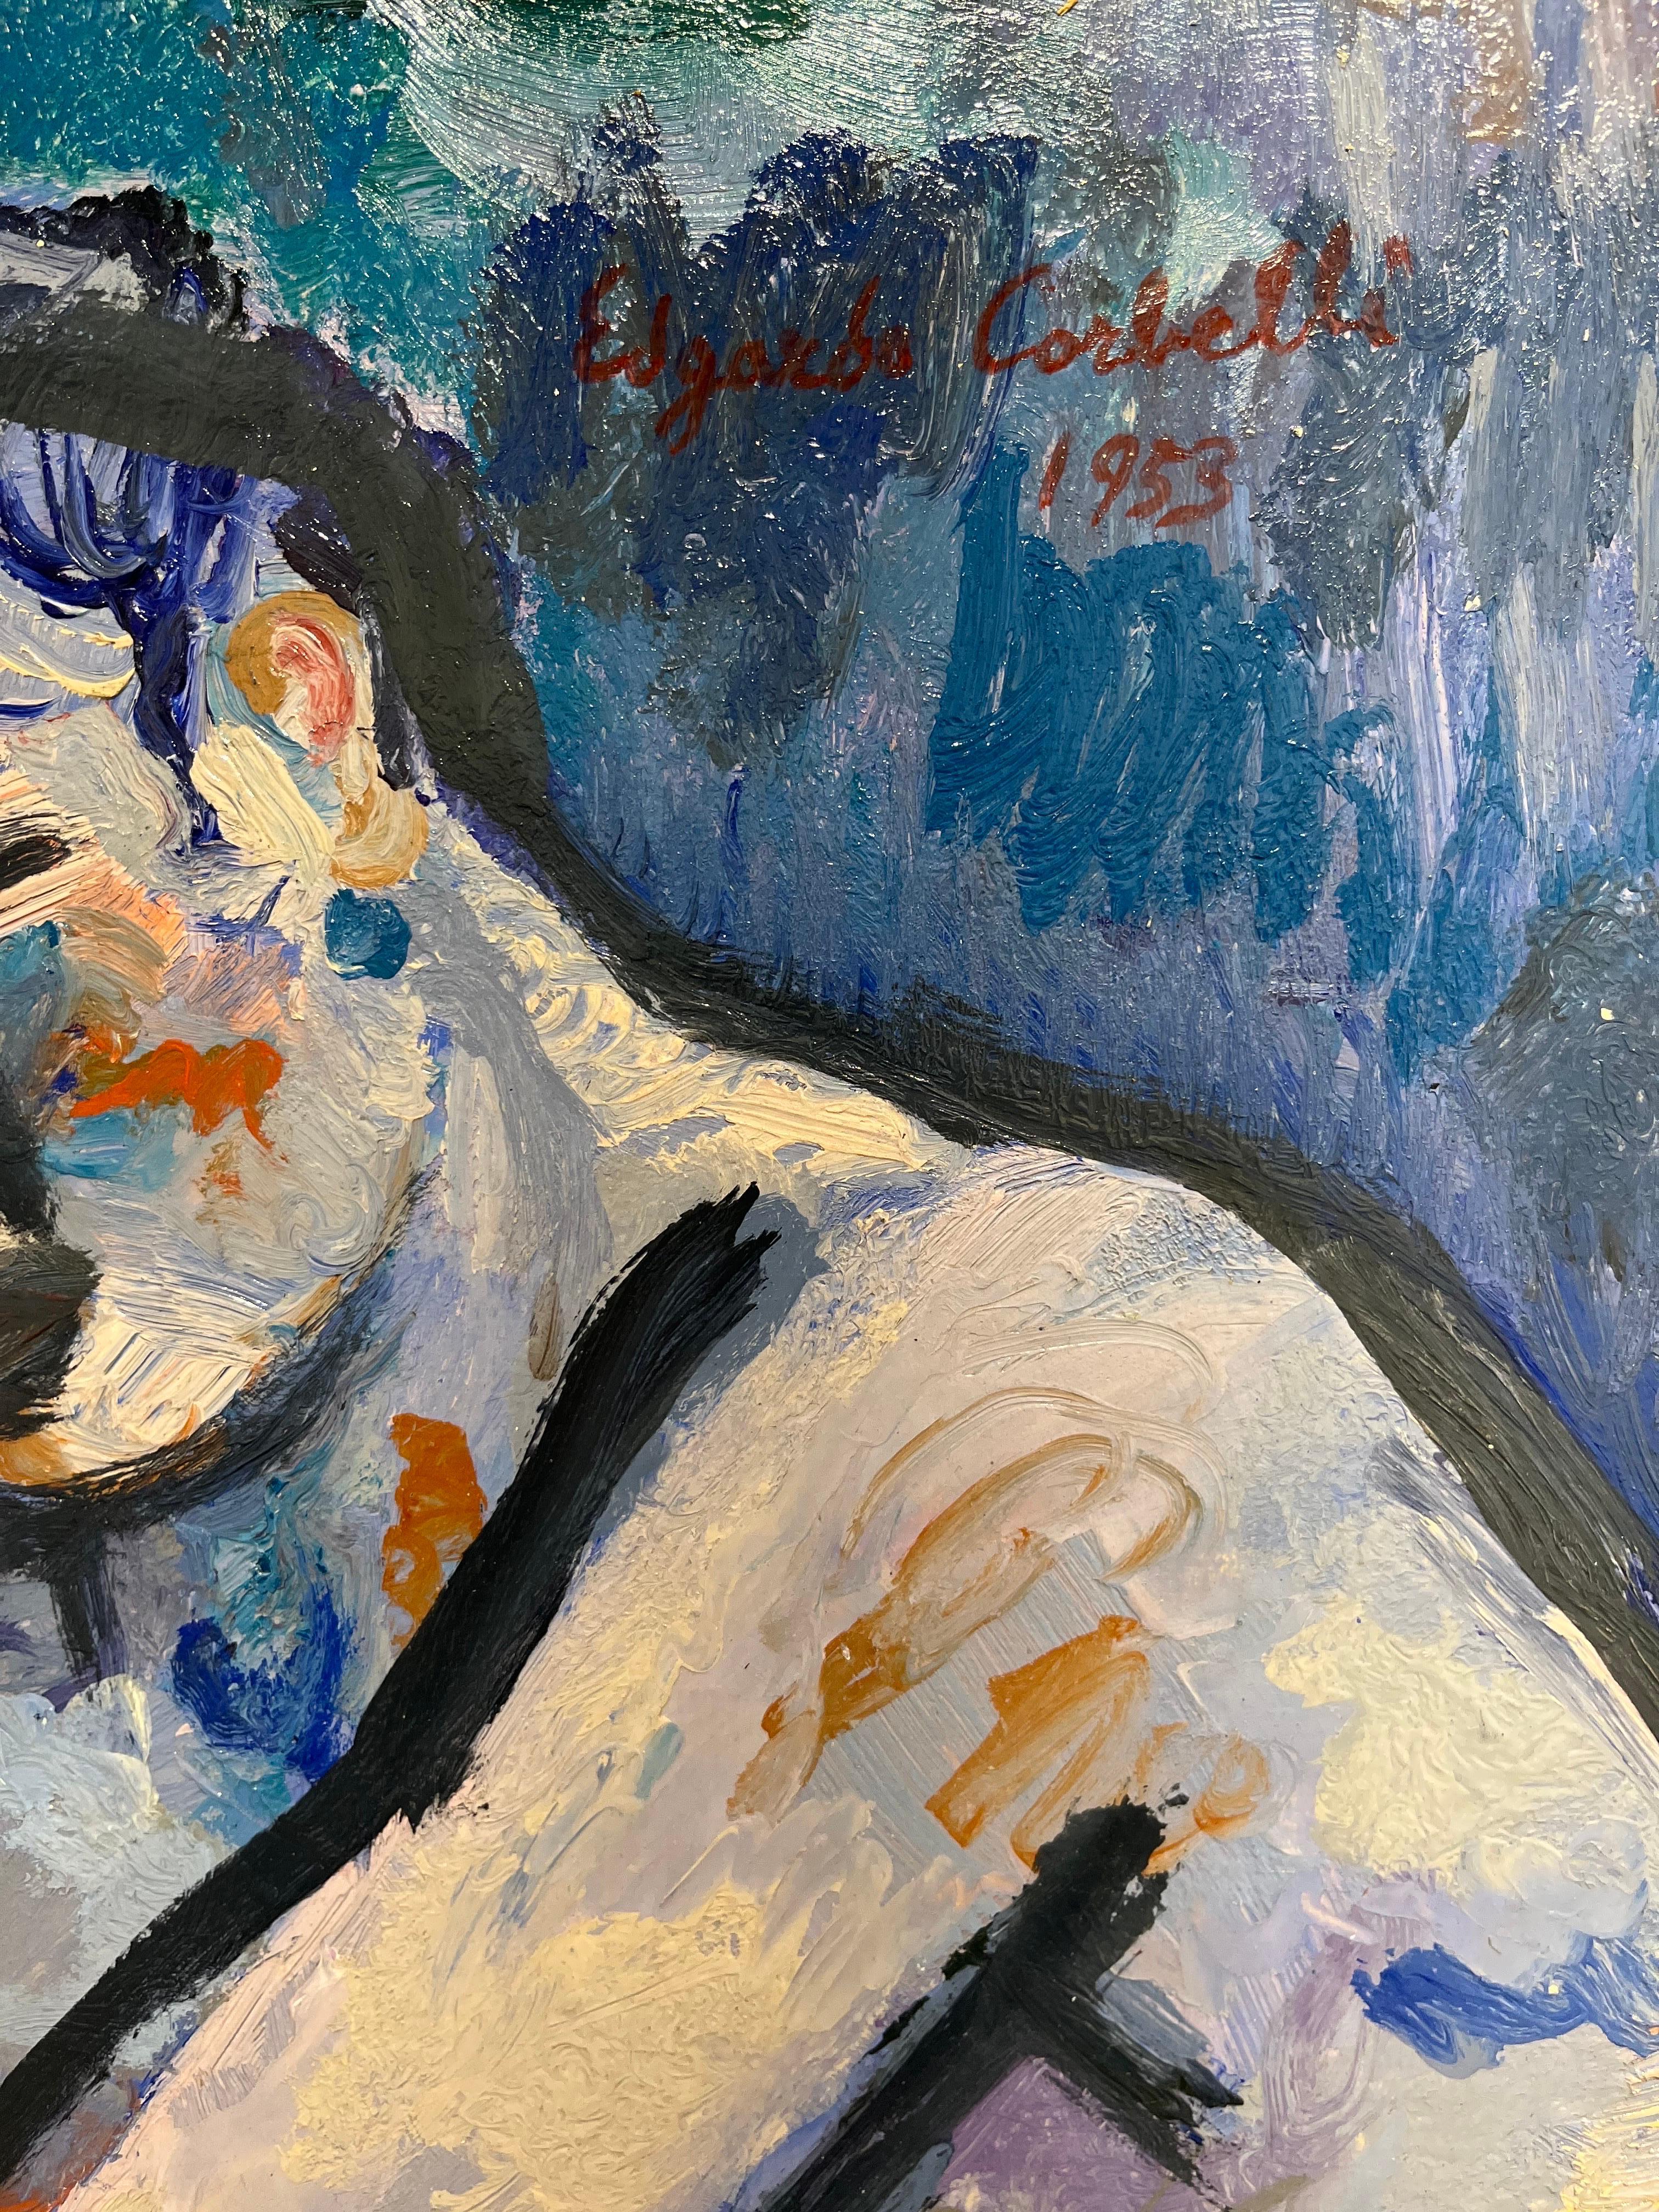 bleu, nude
Edgardo CORBELLI (Turin, 1918 - 1989)

De la composition traditionnelle des années 1930, la peinture de Corbelli aboutit à des résultats techniques et expressifs dominés par un signe impétueux assimilé, entre autres, par Oskar Kokoschka à